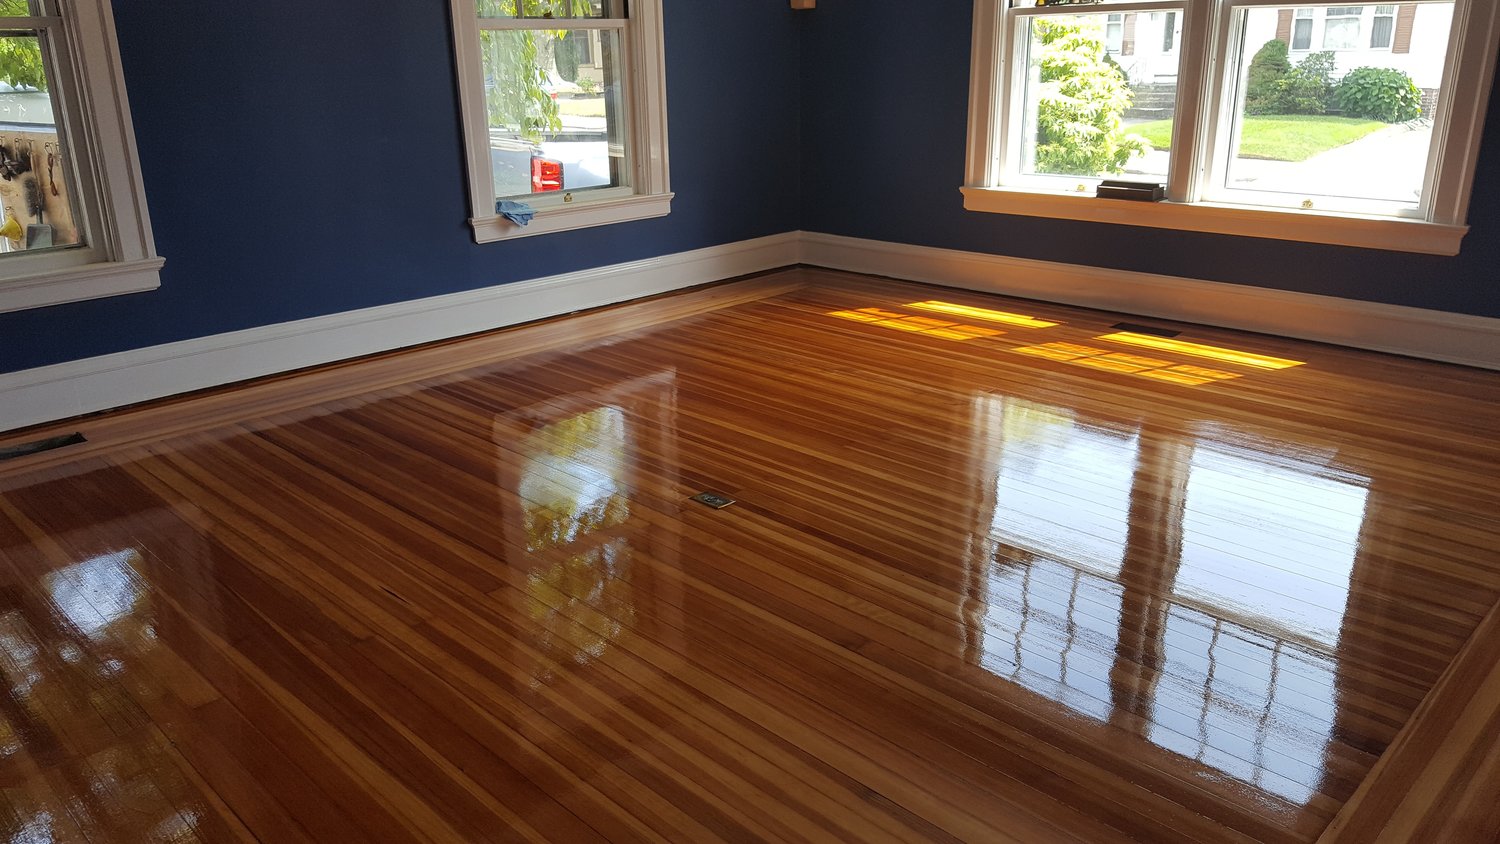 Renaissance Floor Refinishing, High Gloss Polyurethane For Hardwood Floors